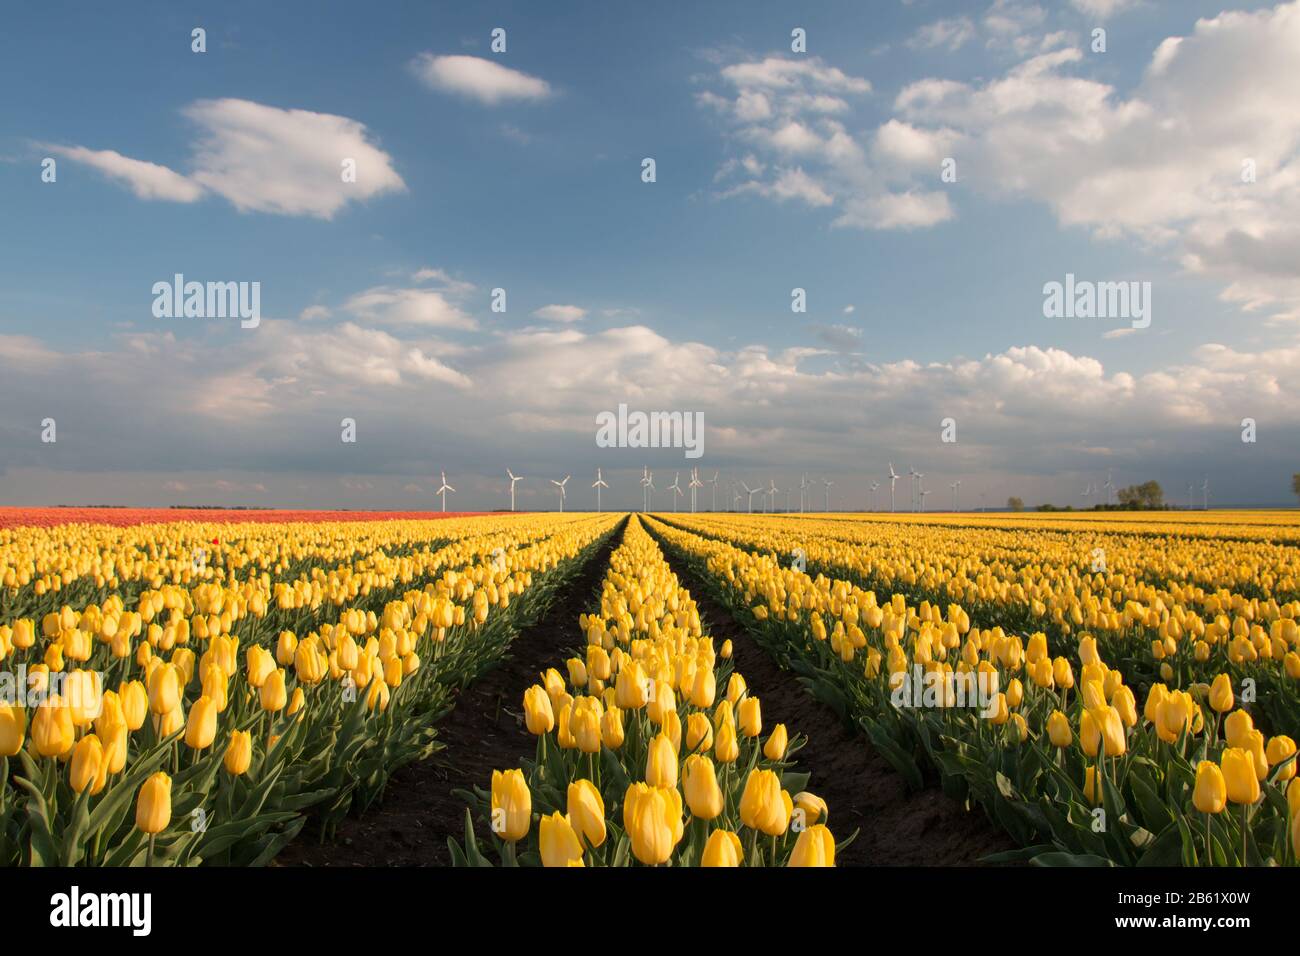 26 de abril de 2019, Sajonia-Anhalt, Schwaneberg: Un campo de tulipanes. La empresa Degenhardt cultiva tulipanes en unas 50 hectáreas cerca de Schwaneberg. Foto: Stephan Schulz/dpa-Zentralbild/ZB Foto de stock